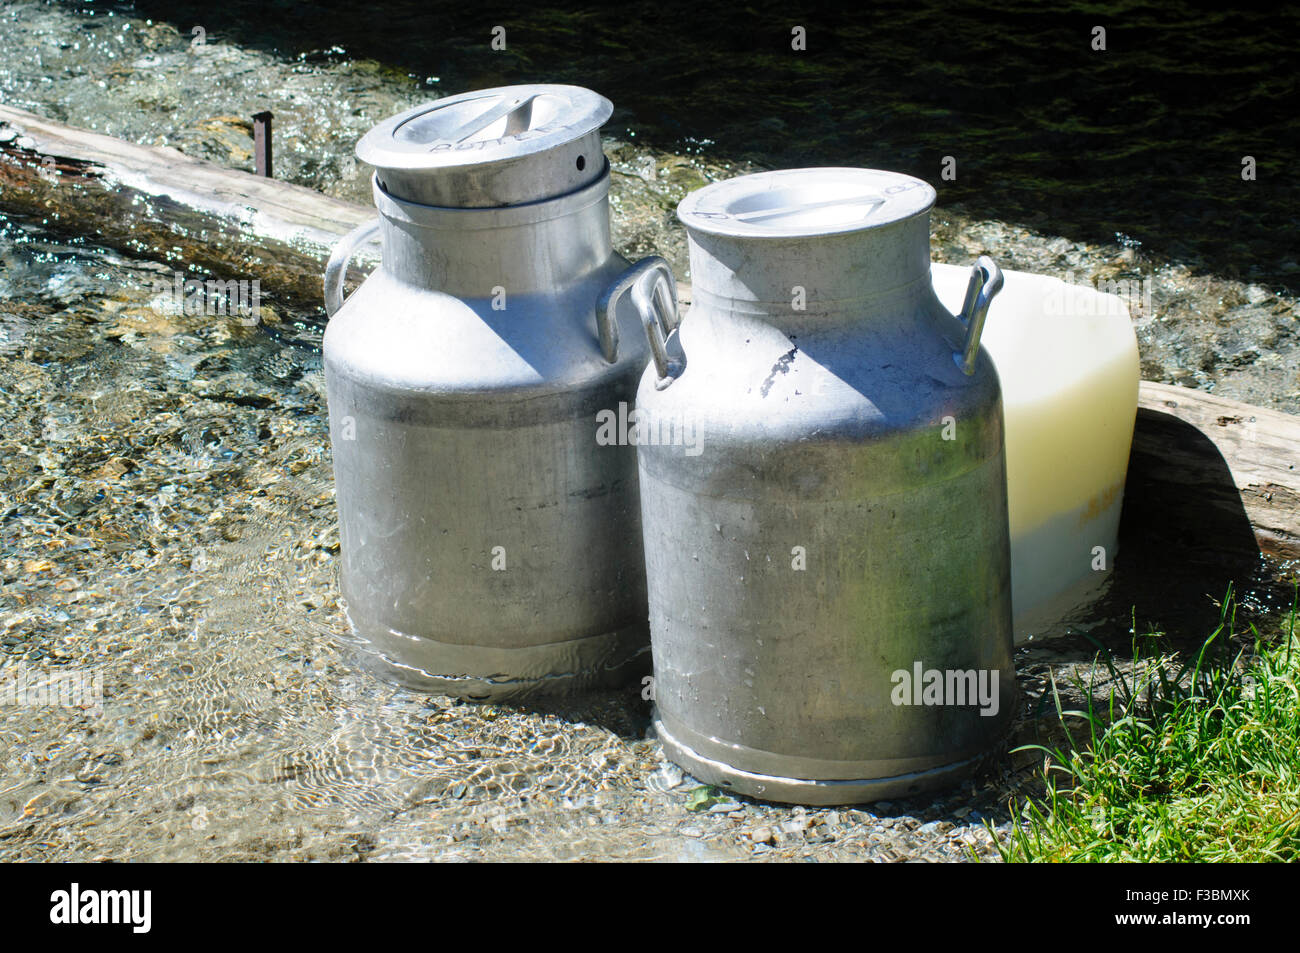 Metall-Milch Urnen im Milchviehbetrieb Kühlung im Quellwasser. Fotografiert in Tirol, Austrial Stockfoto